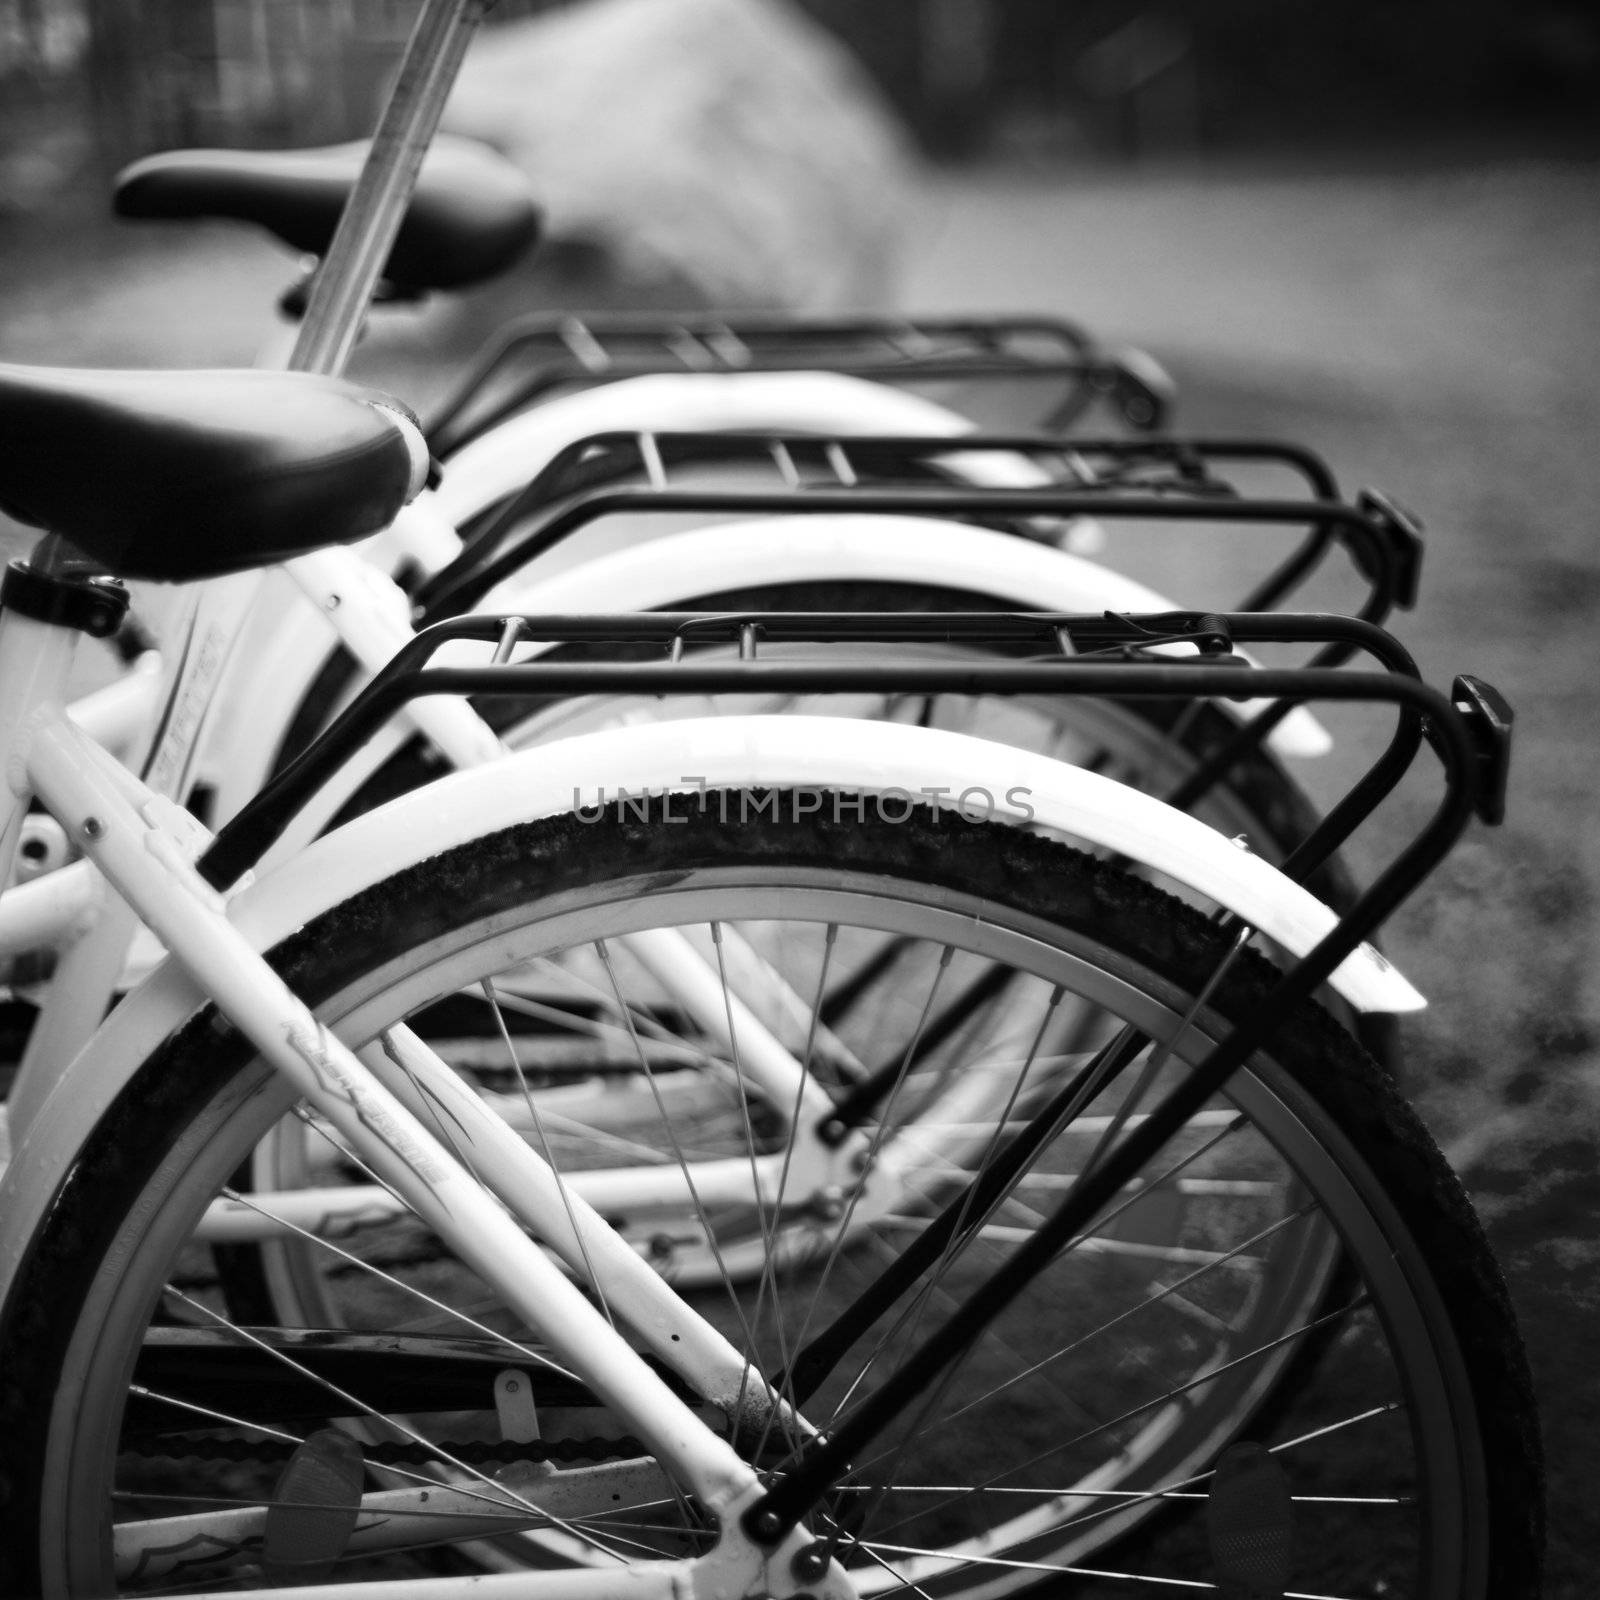  bicycles close up